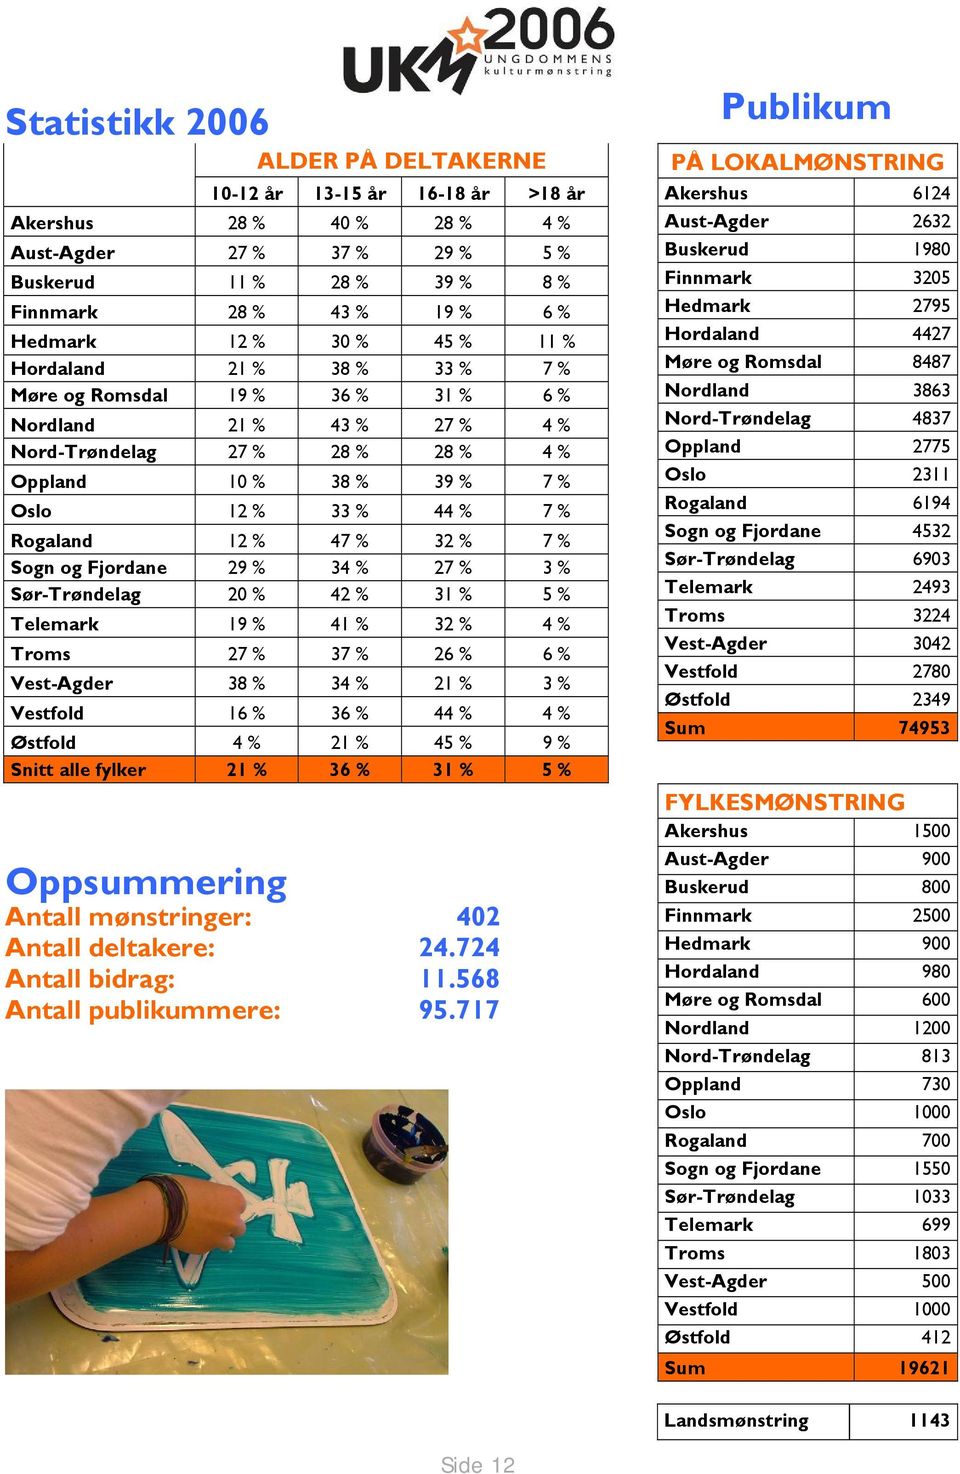 12 % 47 % 32 % 7 % Sogn og Fjordane 29 % 34 % 27 % 3 % Sør-Trøndelag 20 % 42 % 31 % 5 % Telemark 19 % 41 % 32 % 4 % Troms 27 % 37 % 26 % 6 % Vest-Agder 38 % 34 % 21 % 3 % Vestfold 16 % 36 % 44 % 4 %